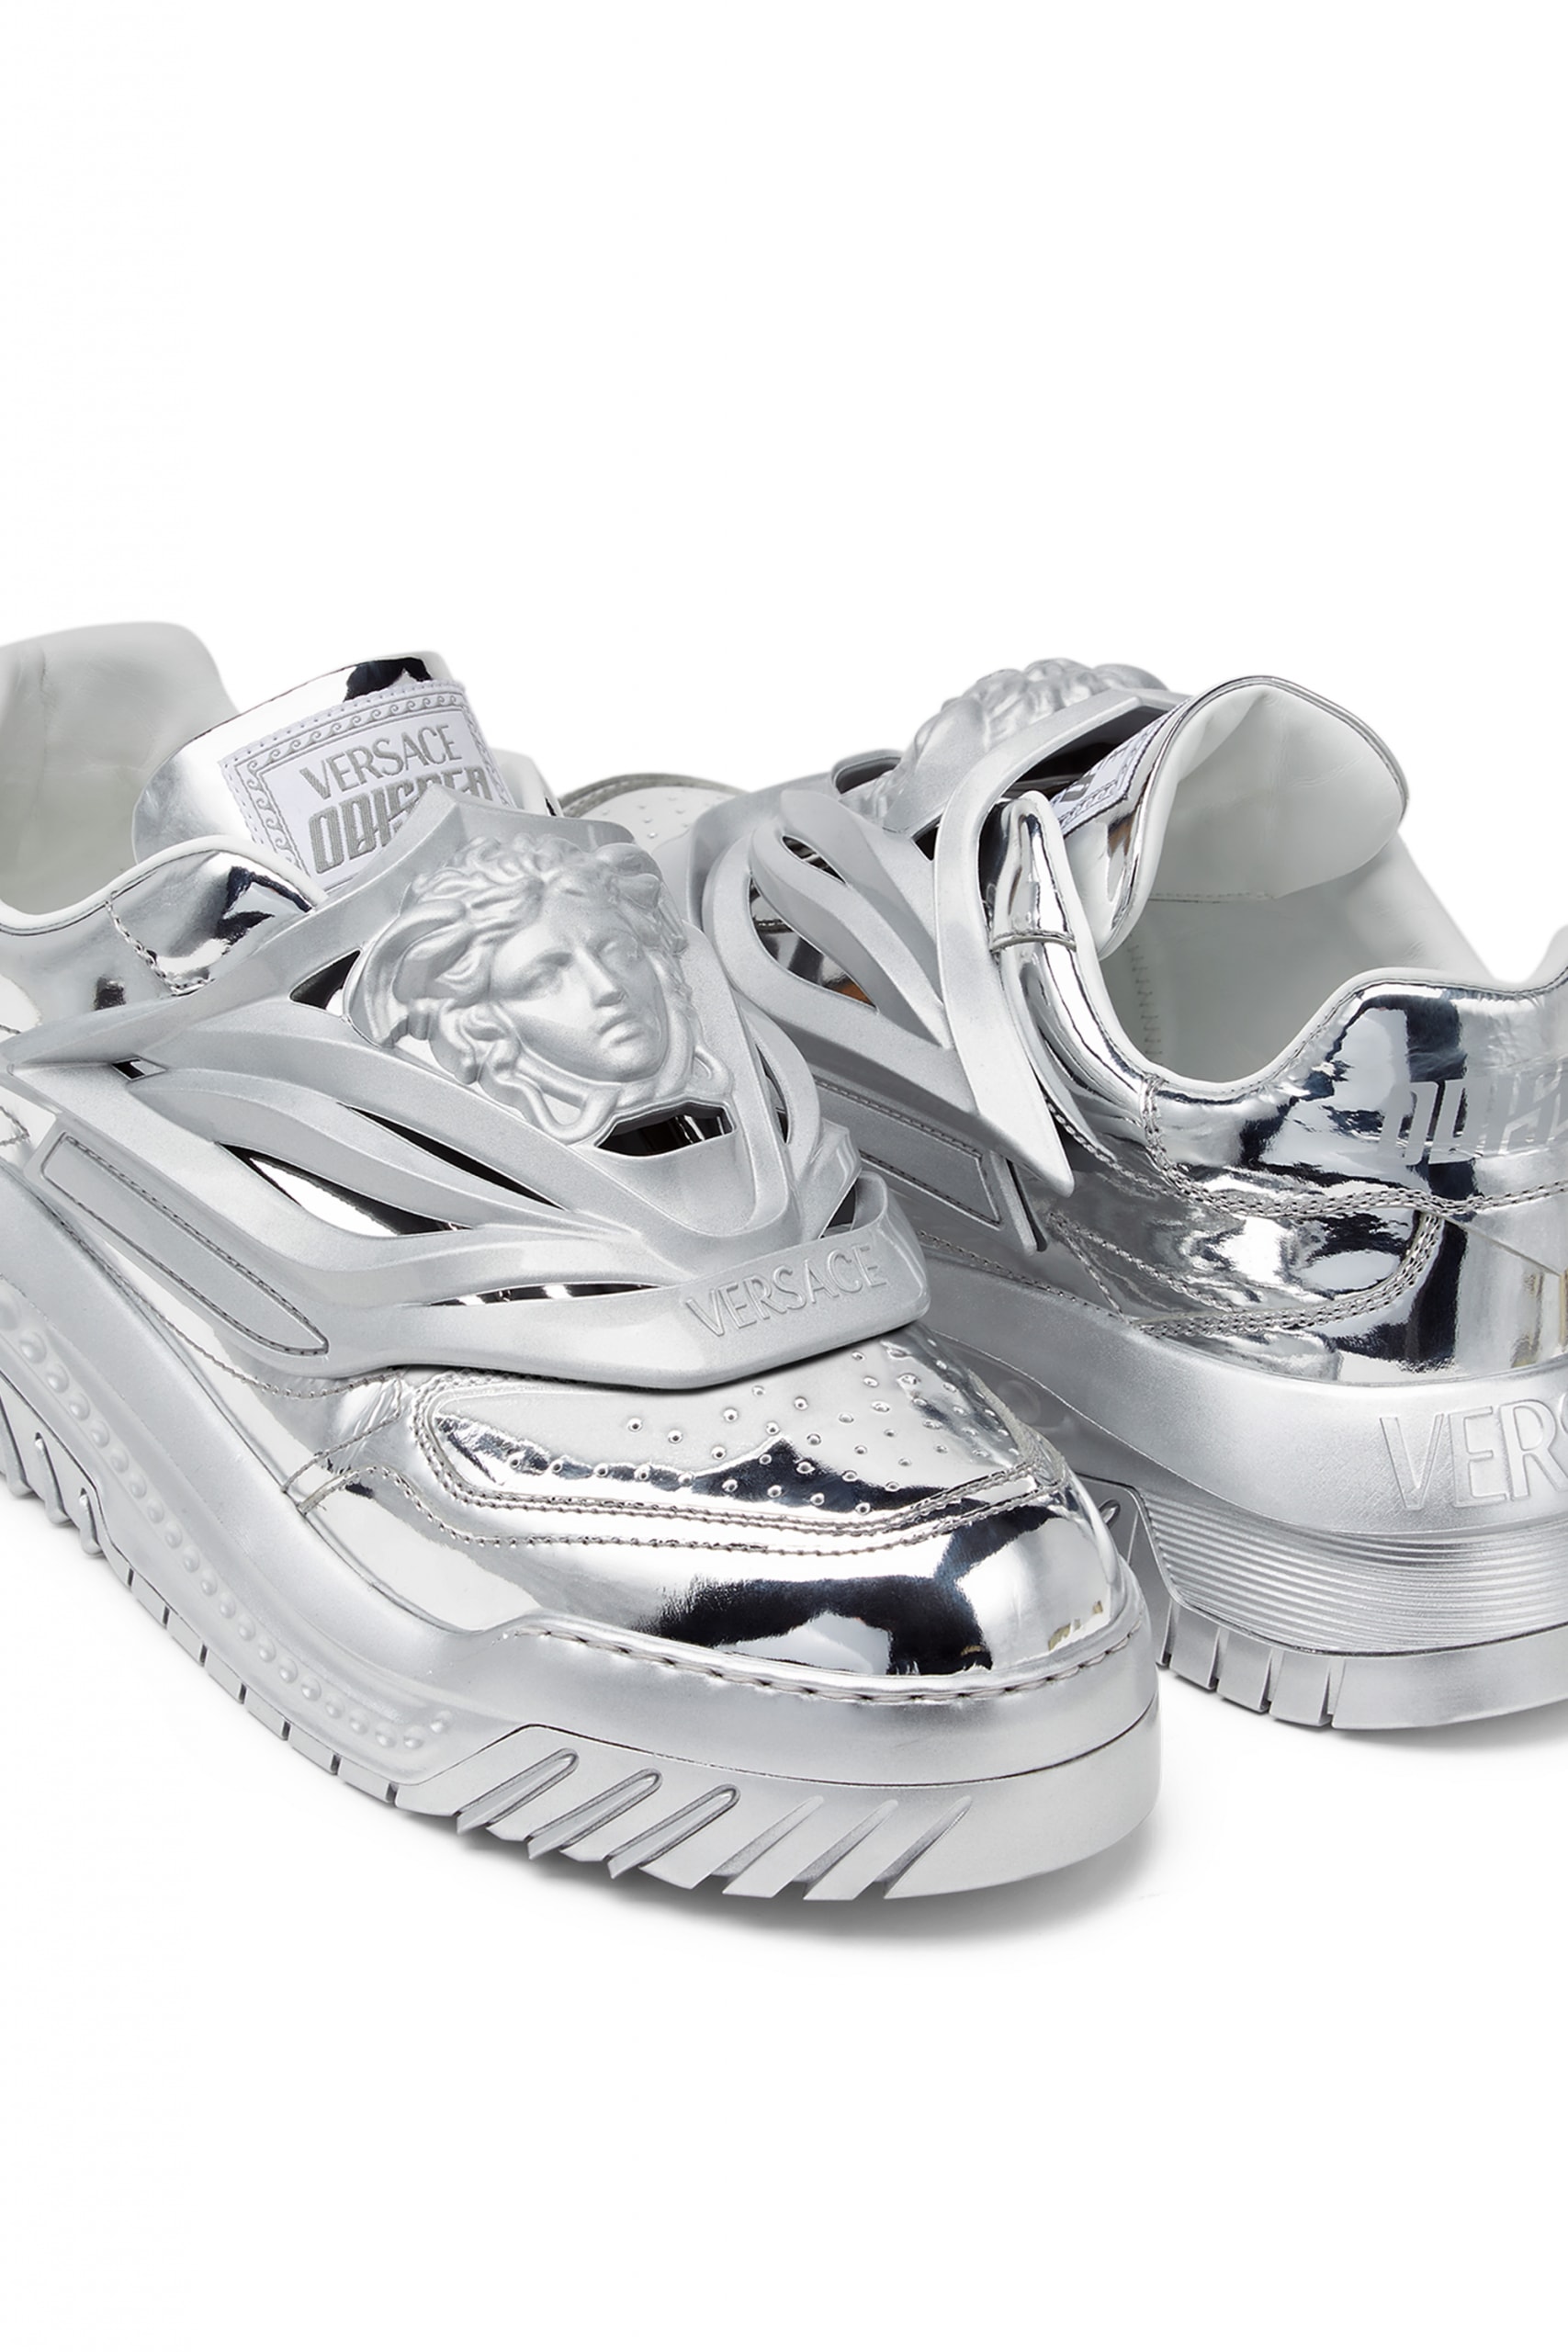 ヴェルサーチェが宇宙を彷彿とさせる新作スニーカー オディッセアをリリース versace odissea sneaker release info